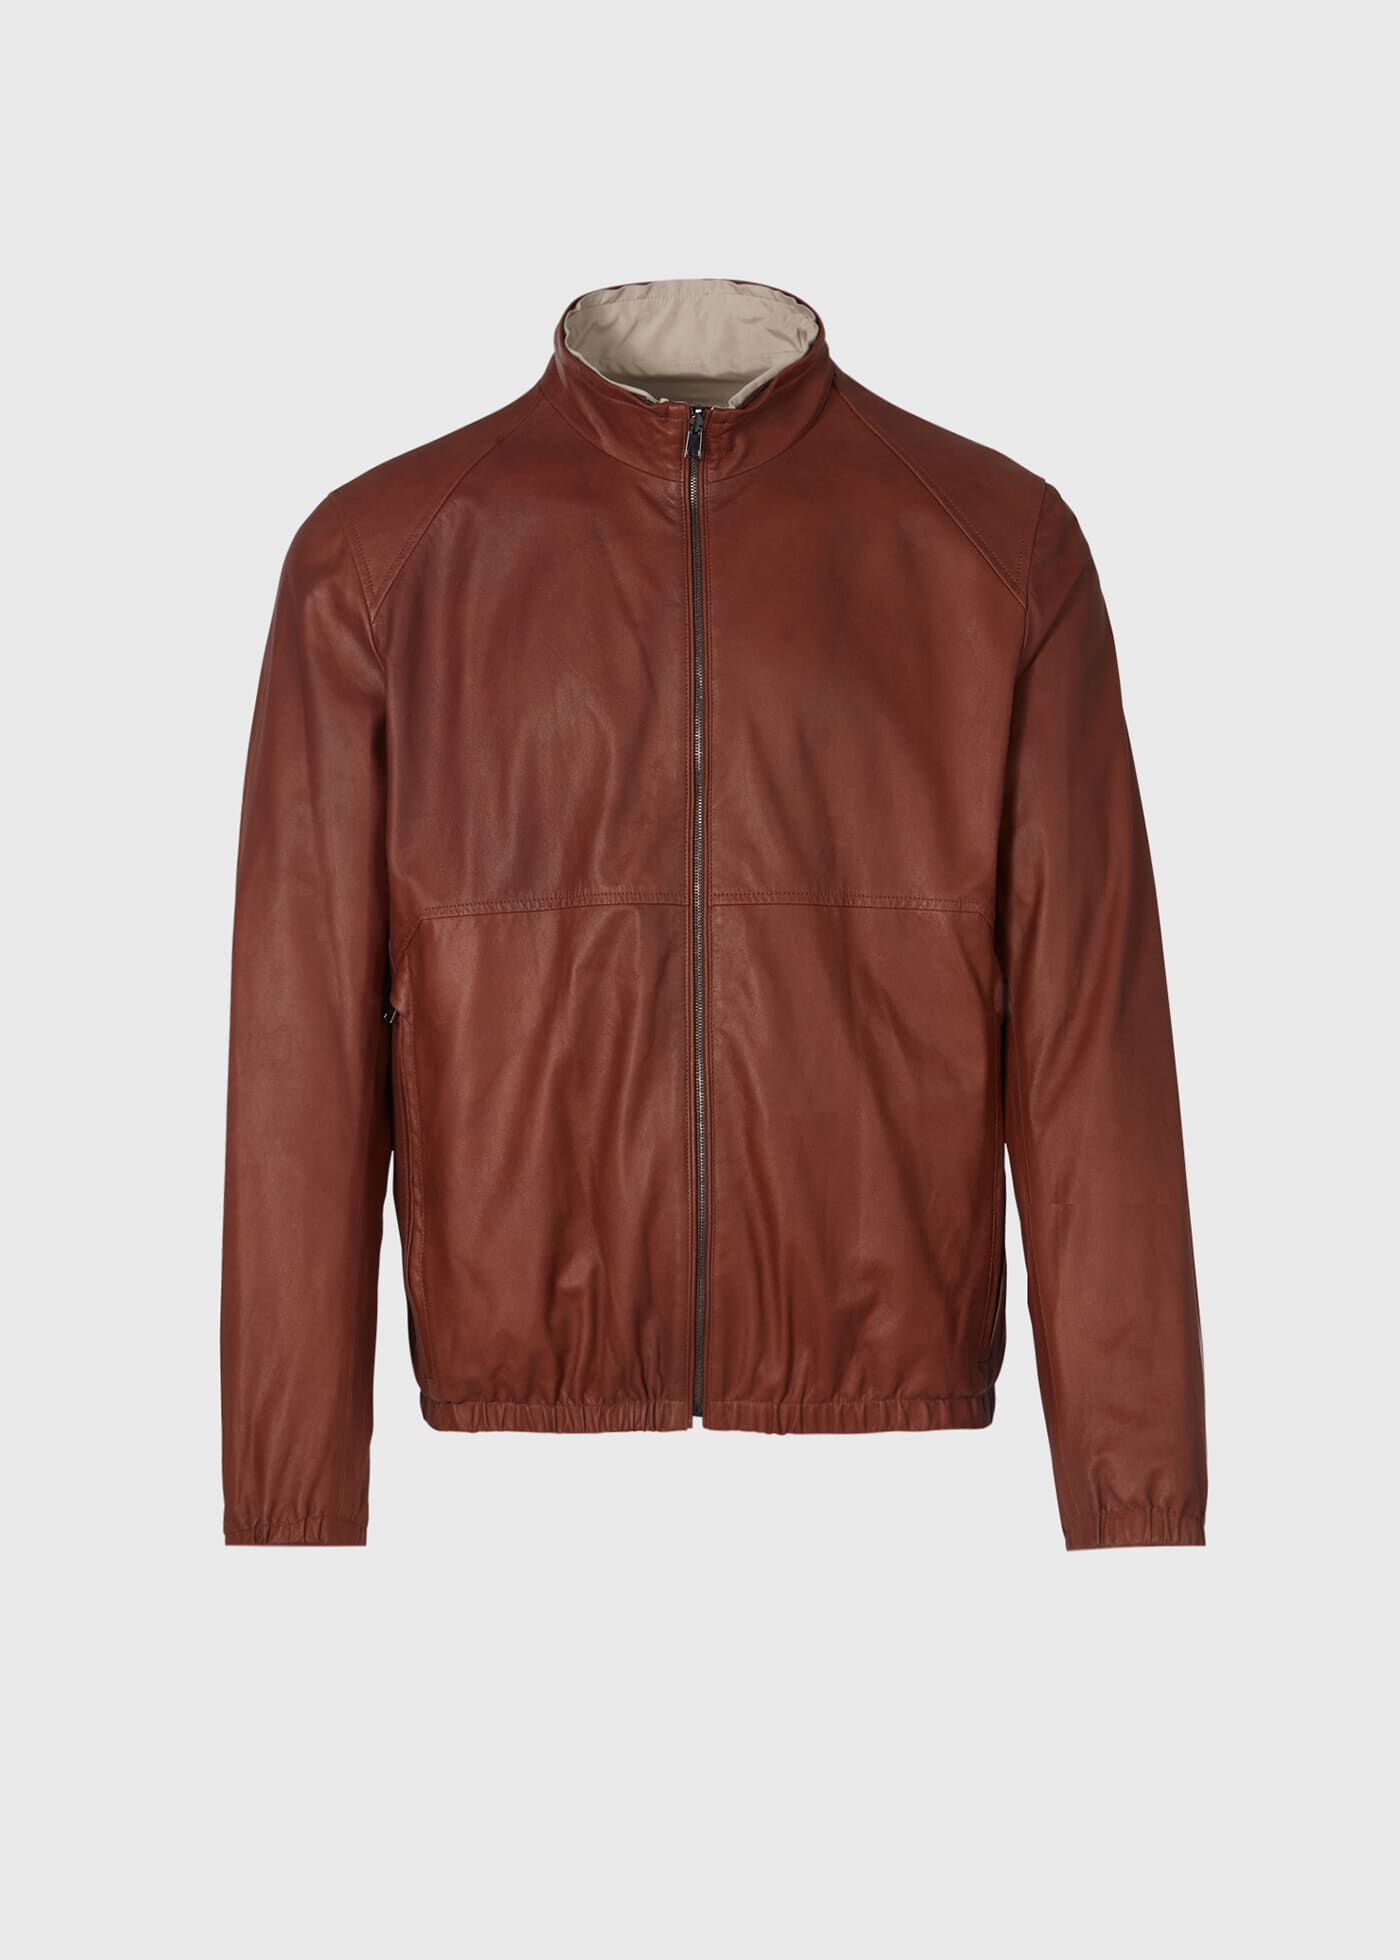 Men's Sportwear - Coats, Jackets and Outerwear - Paul Stuart